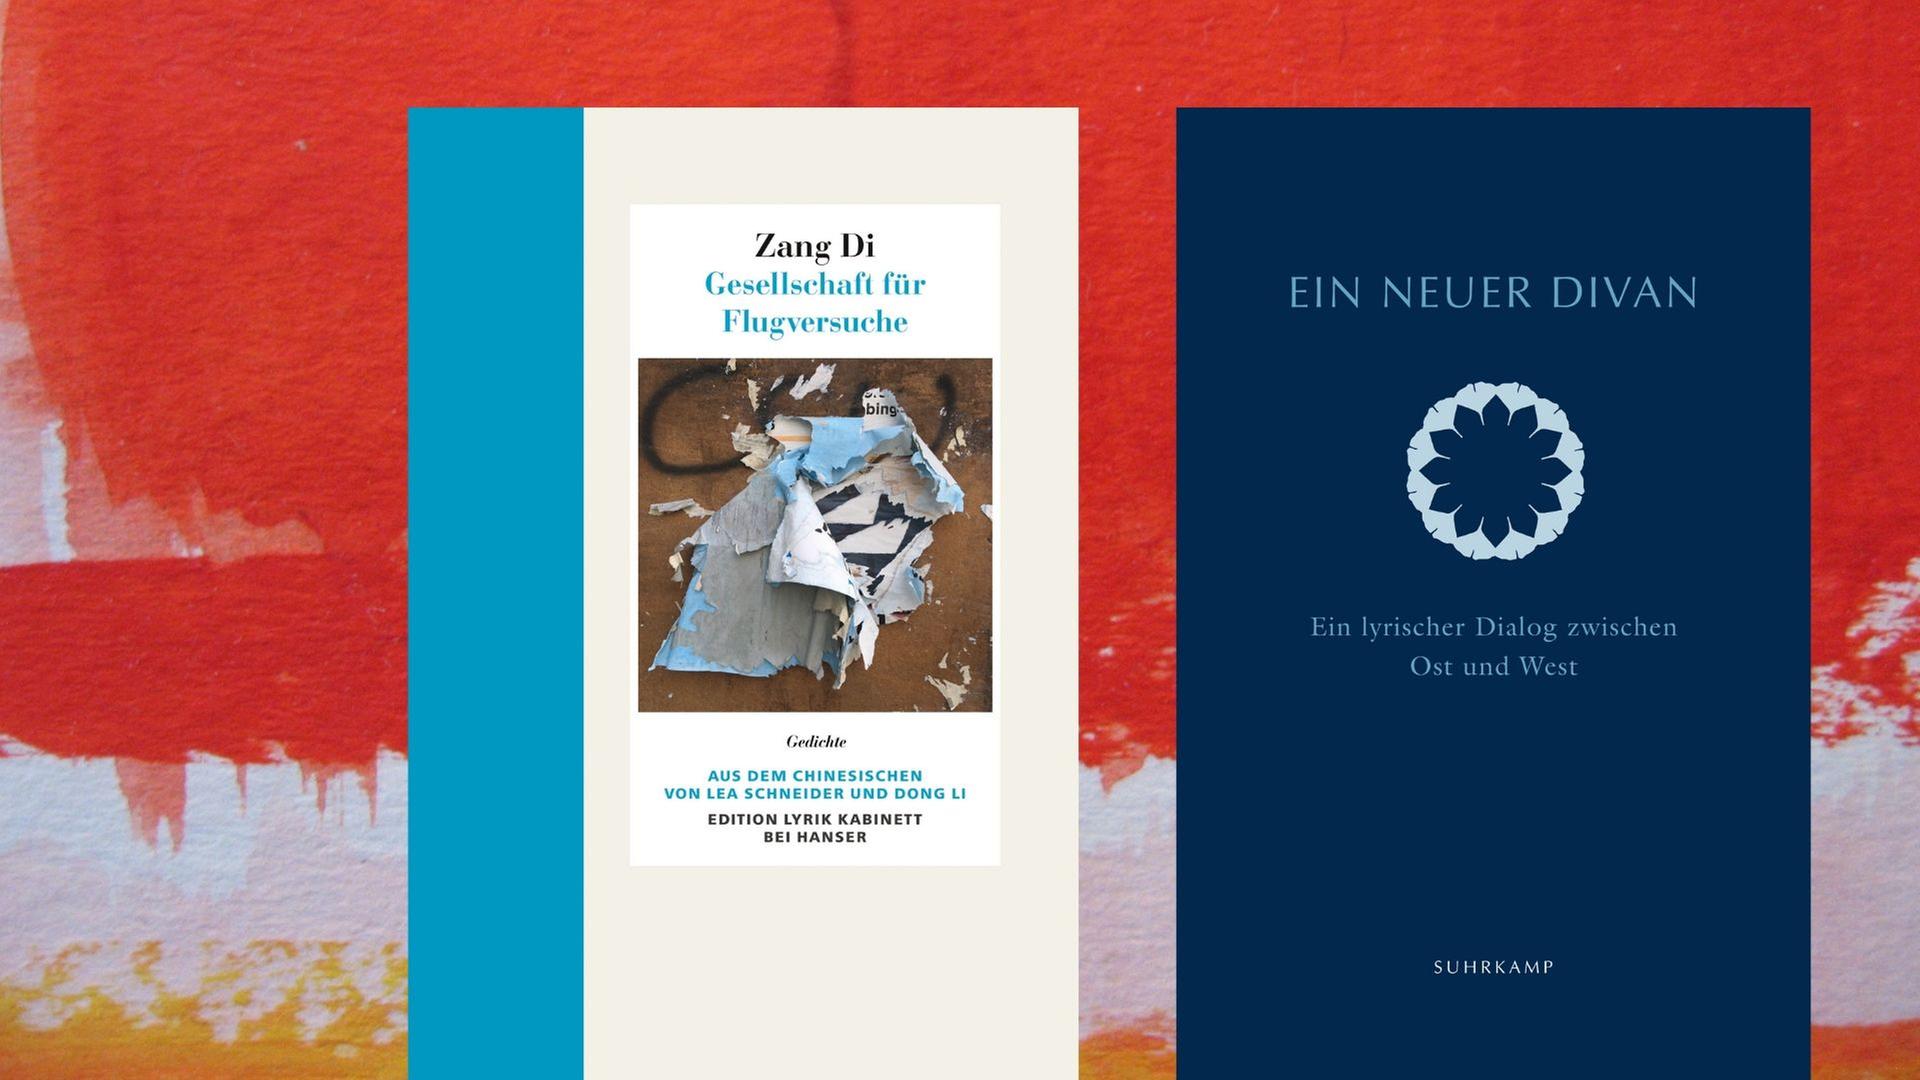 Buchcover links: Zang Di: „Gesellschaft für Flugversuche“, Buchcover rechts: Barbara Schwepcke, Bill Swainson (Hrsg.): „Ein neuer Divan - Ein lyrischer Dialog zwischen Ost und West“